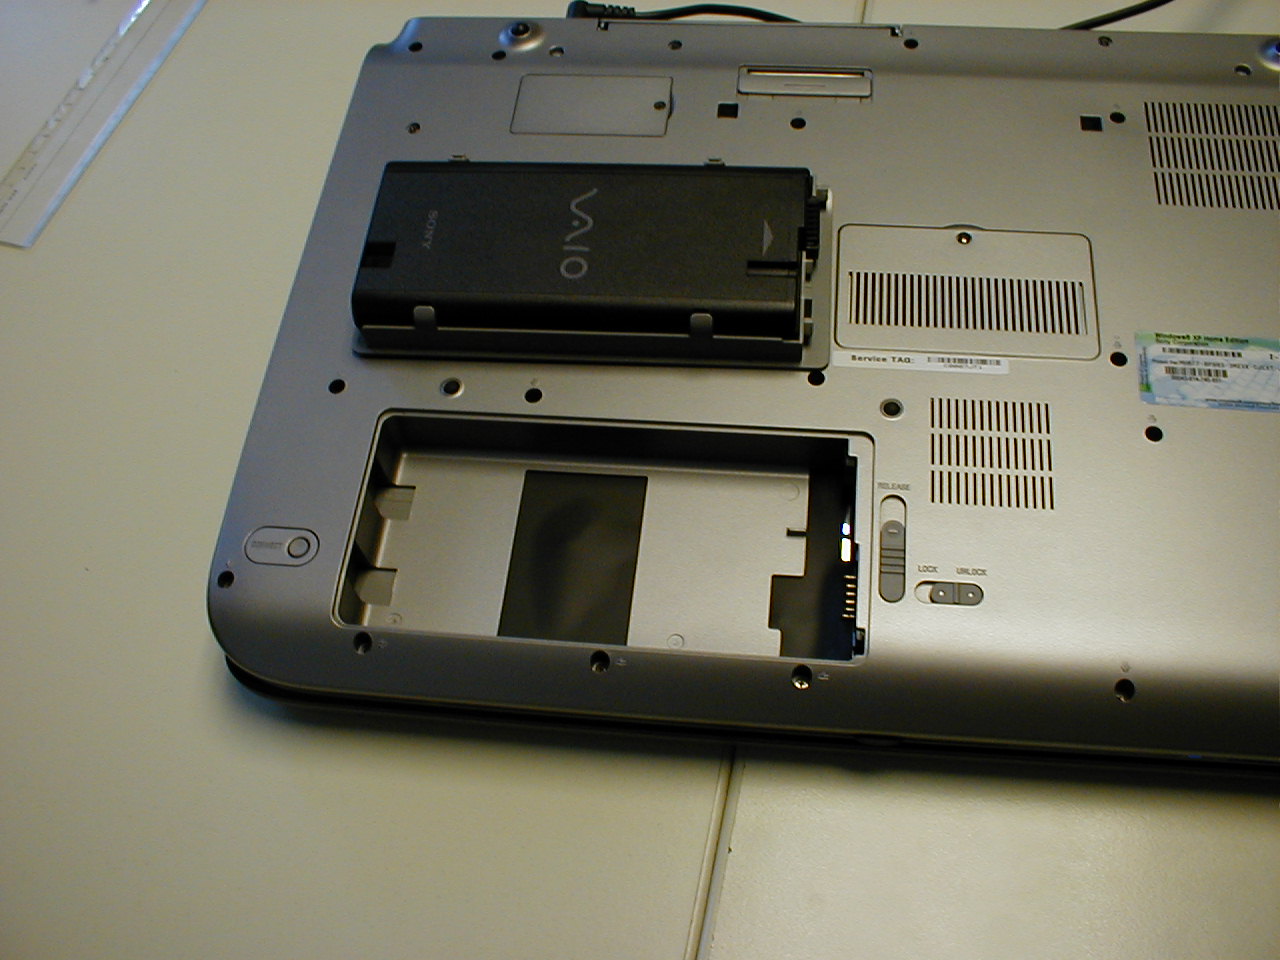 HP ZBook x2 : un rival très puissant du Surface Pro avec clavier détachable  - Le Monde Informatique